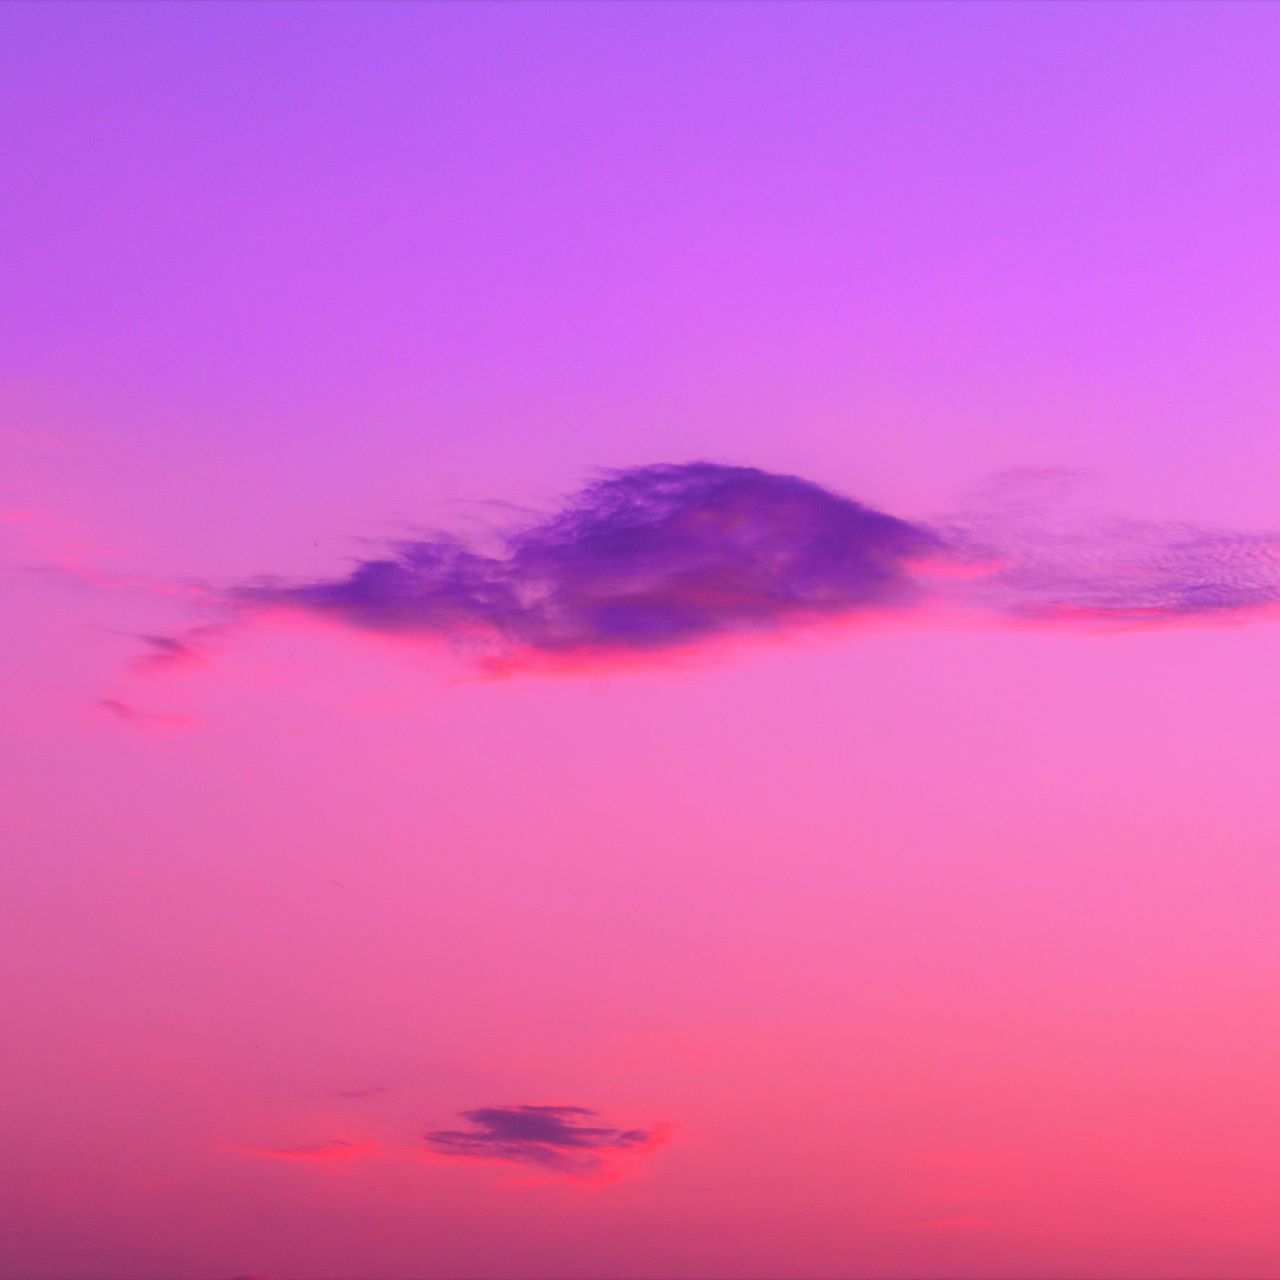 Download wallpaper 1280x1280 cloud, pink, sky ipad, ipad ipad mini for parallax HD background